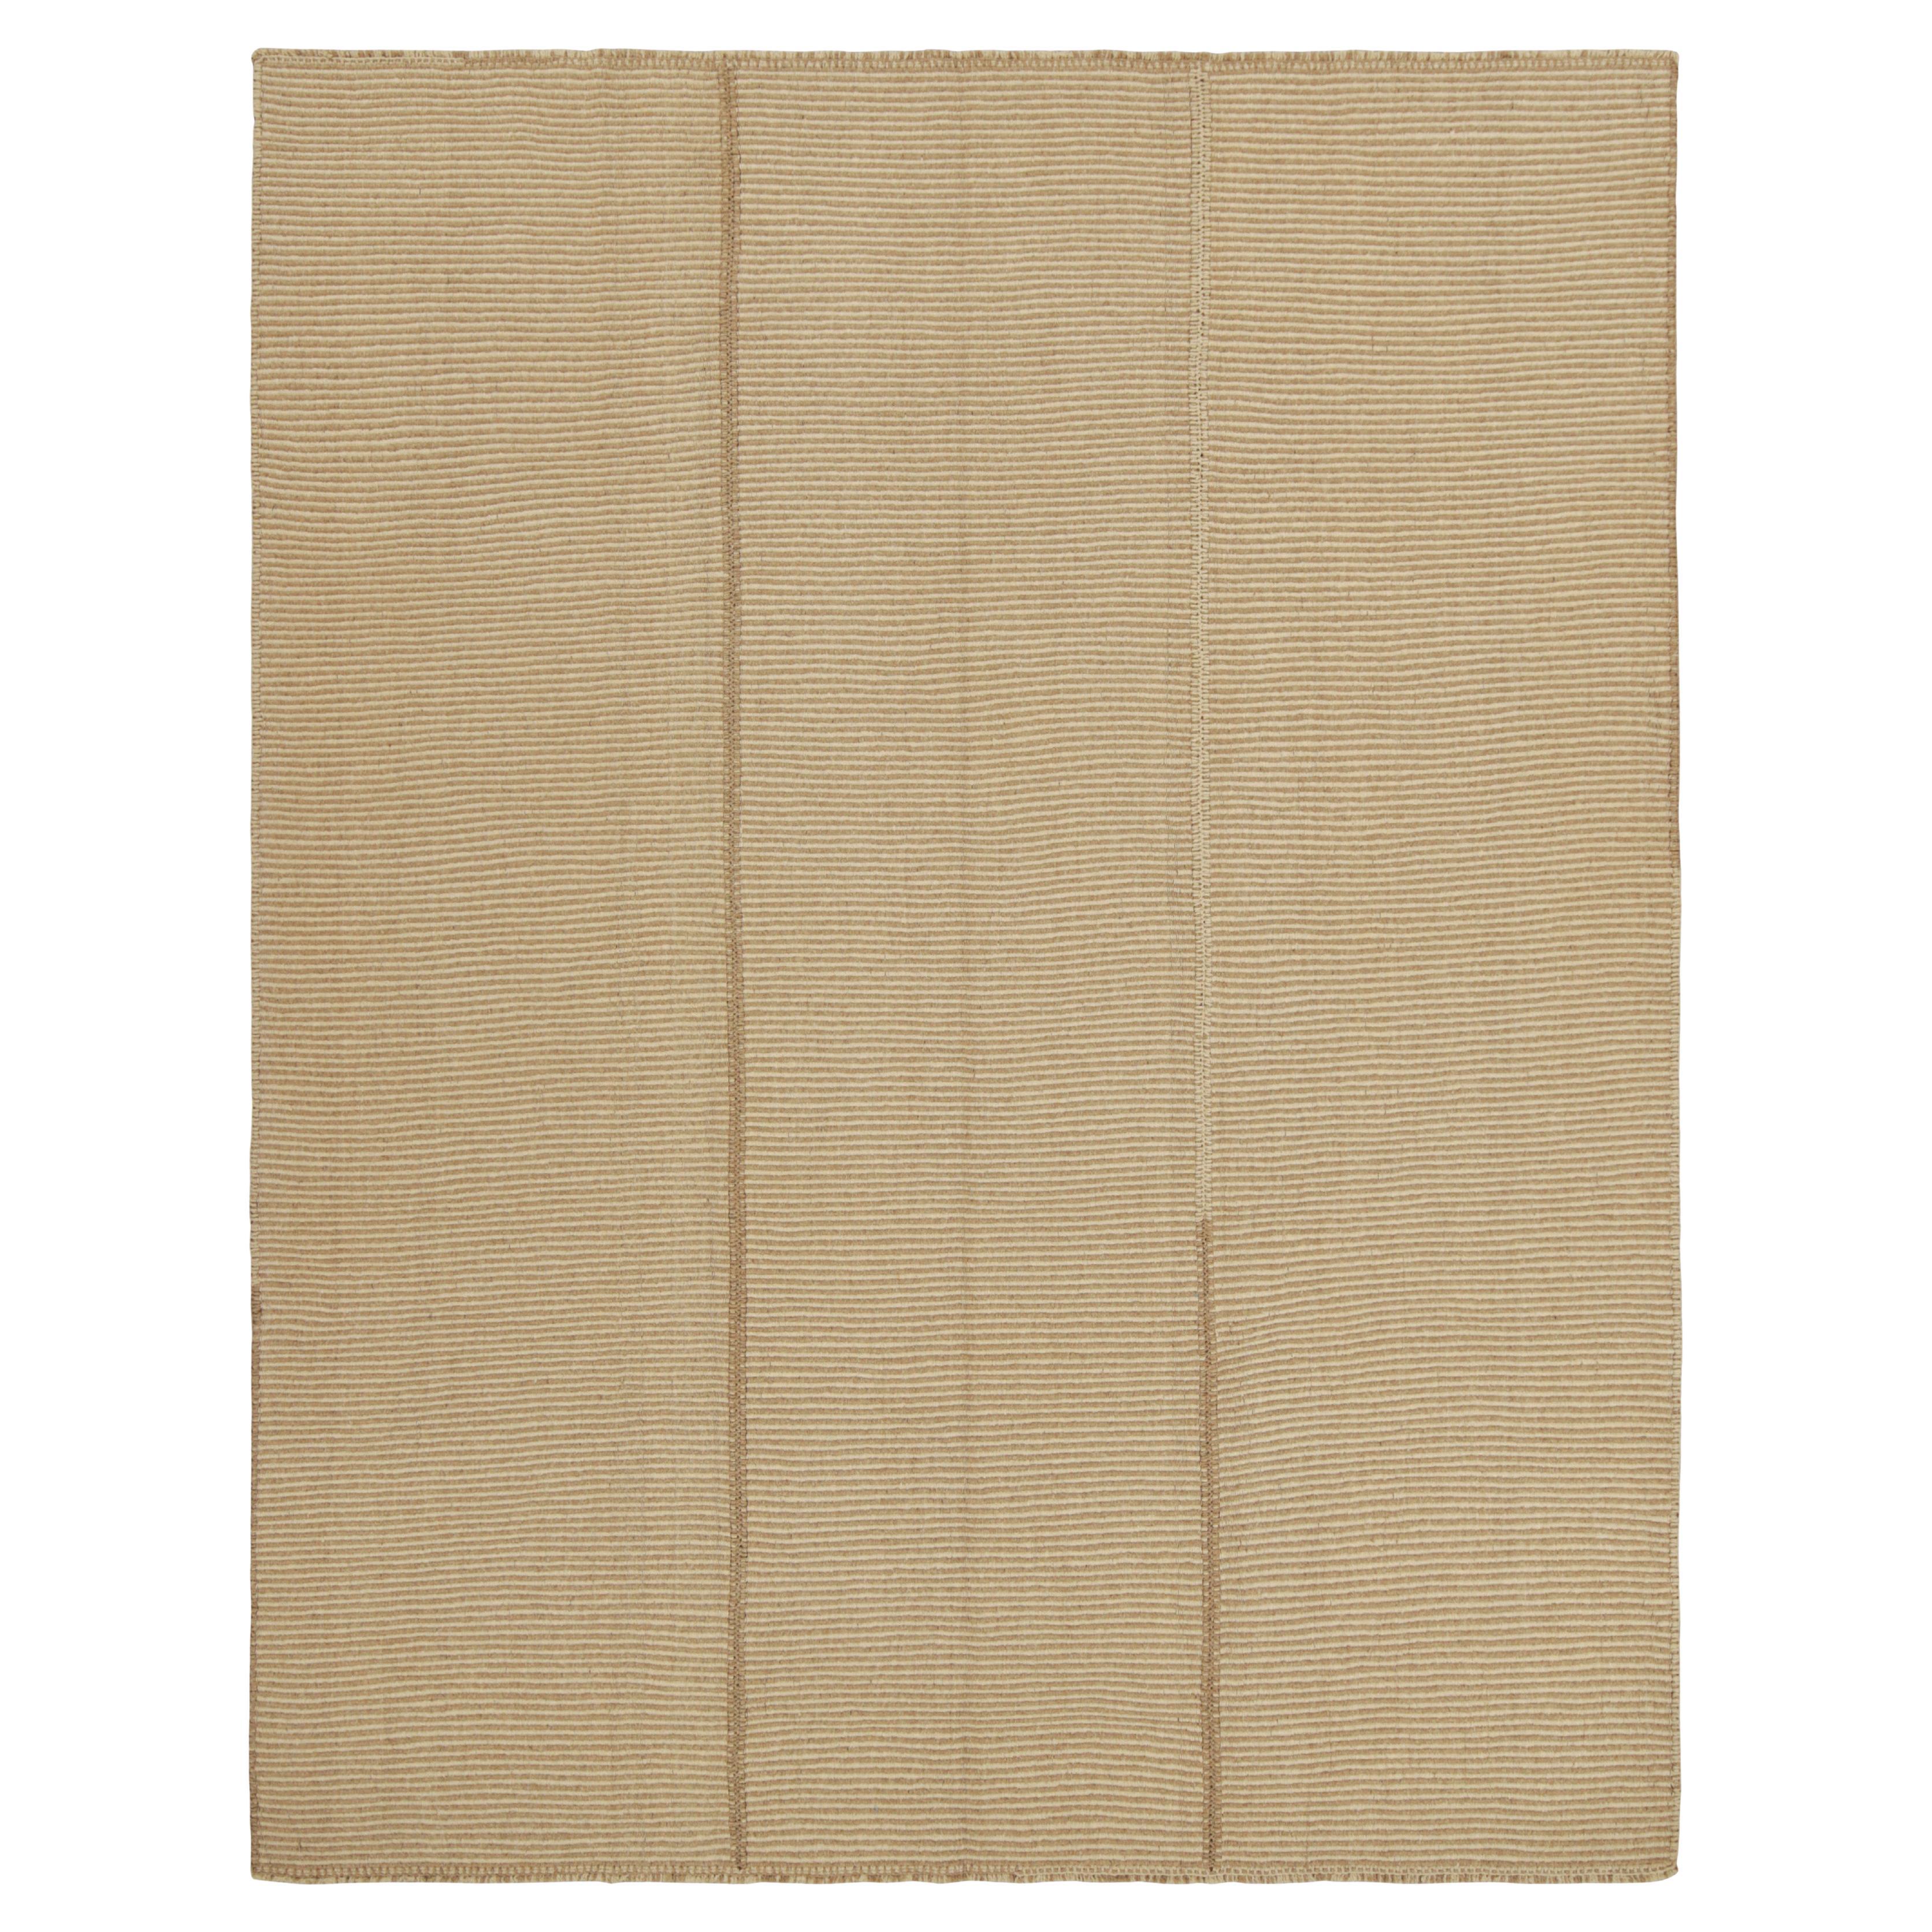 Rug & Kilim's Contemporary Kilim in Beige und Brown Textural Stripes